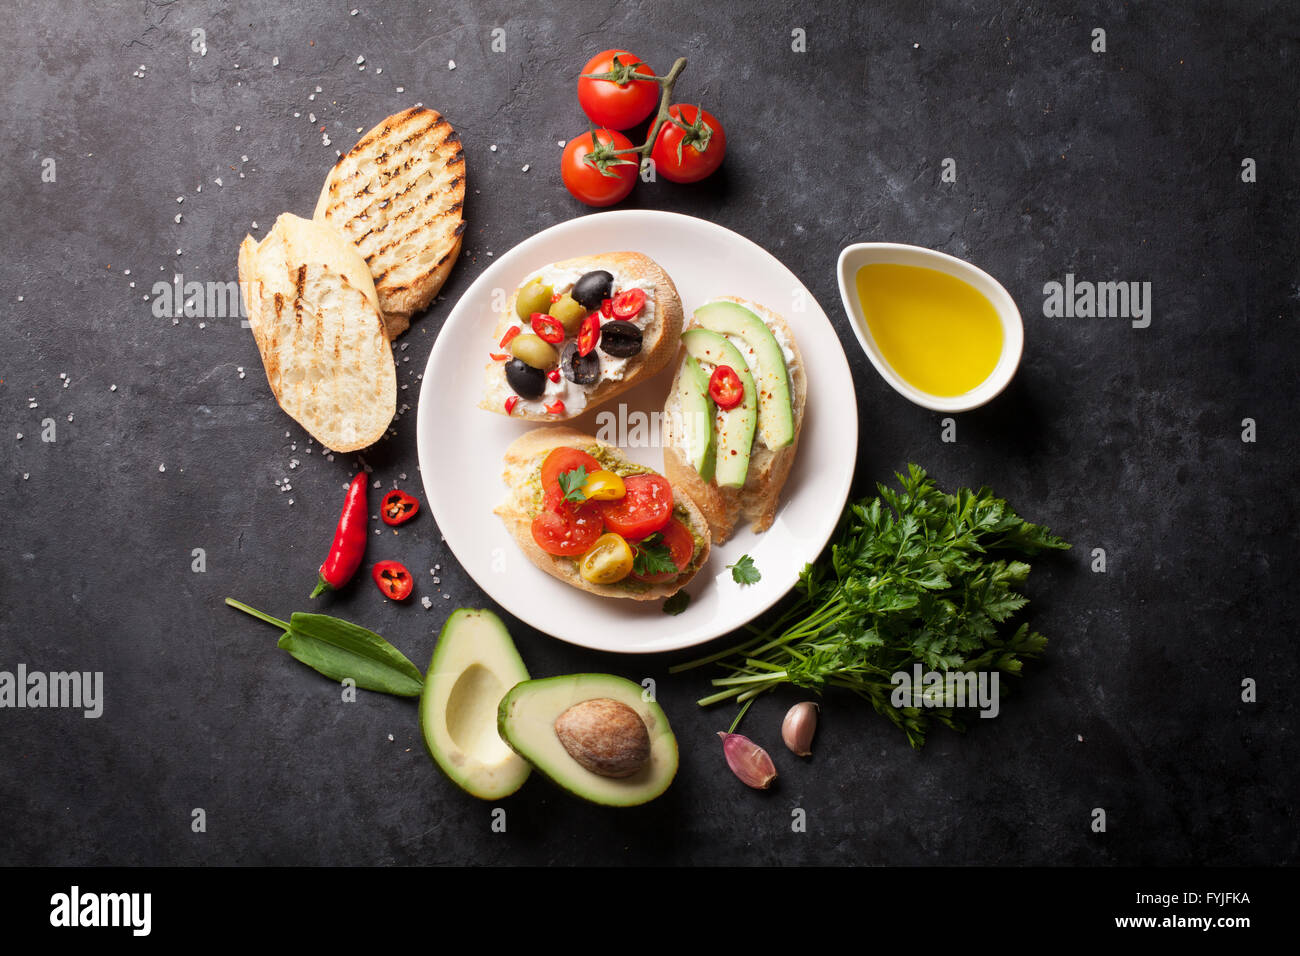 Toast-Sandwiches mit Avocado, Tomaten und Oliven auf Stein Hintergrund. Ansicht von oben Stockfoto